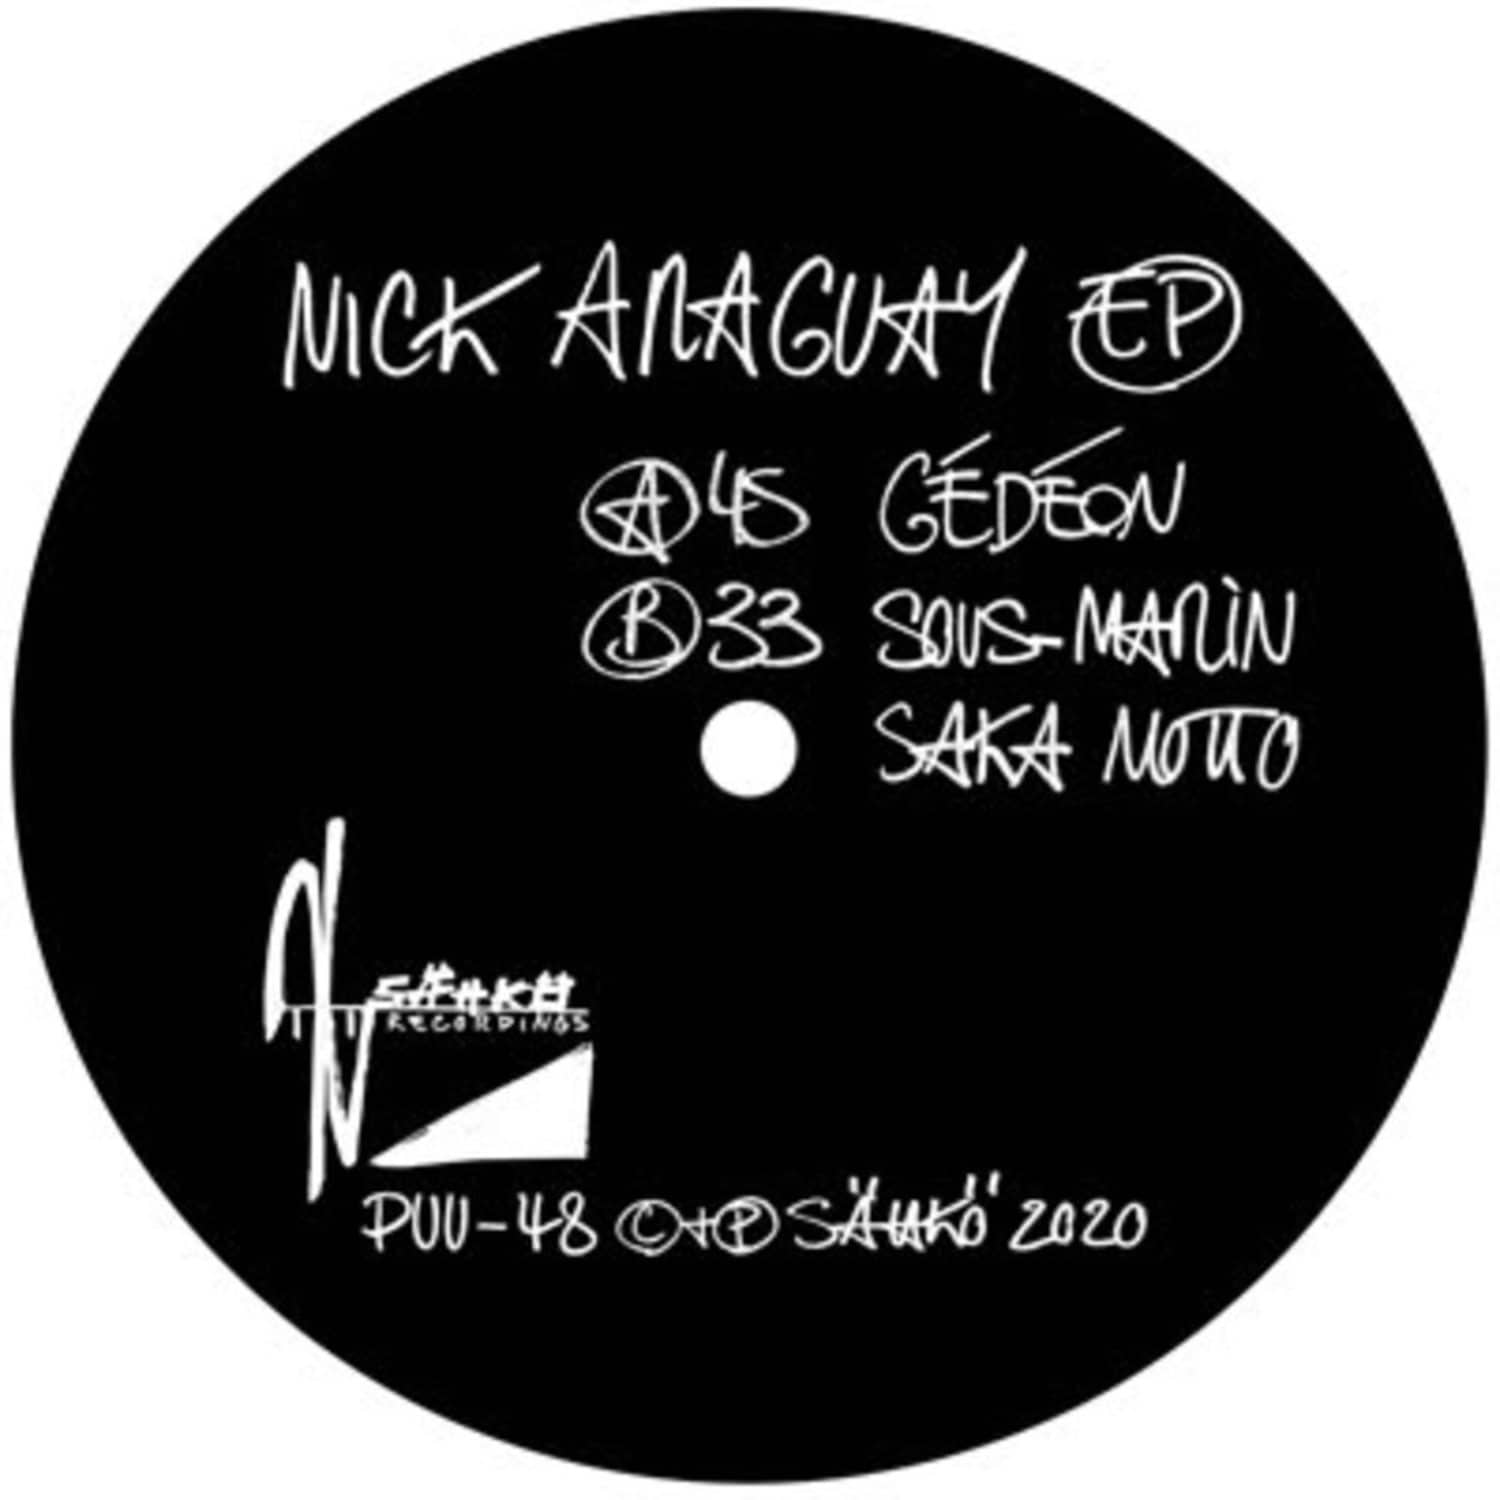 Nick Araguay - EP